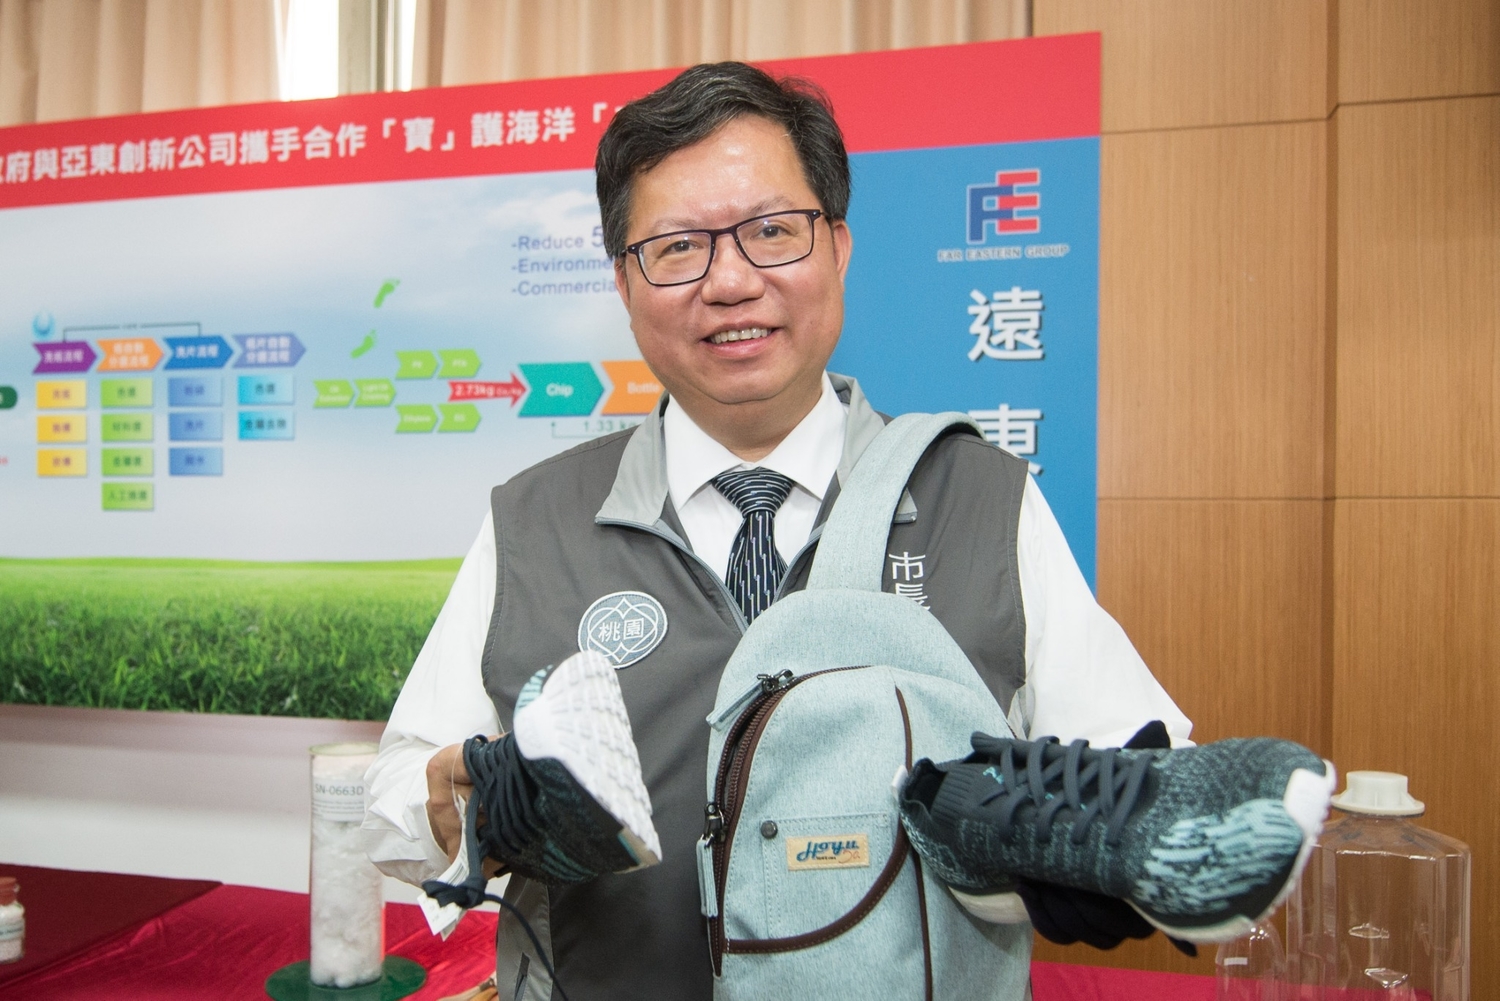 桃園市長鄭文燦手中拿的鞋子和背包都是利用廢棄寶特瓶再生的環保物品。   圖：桃園市政府/提供